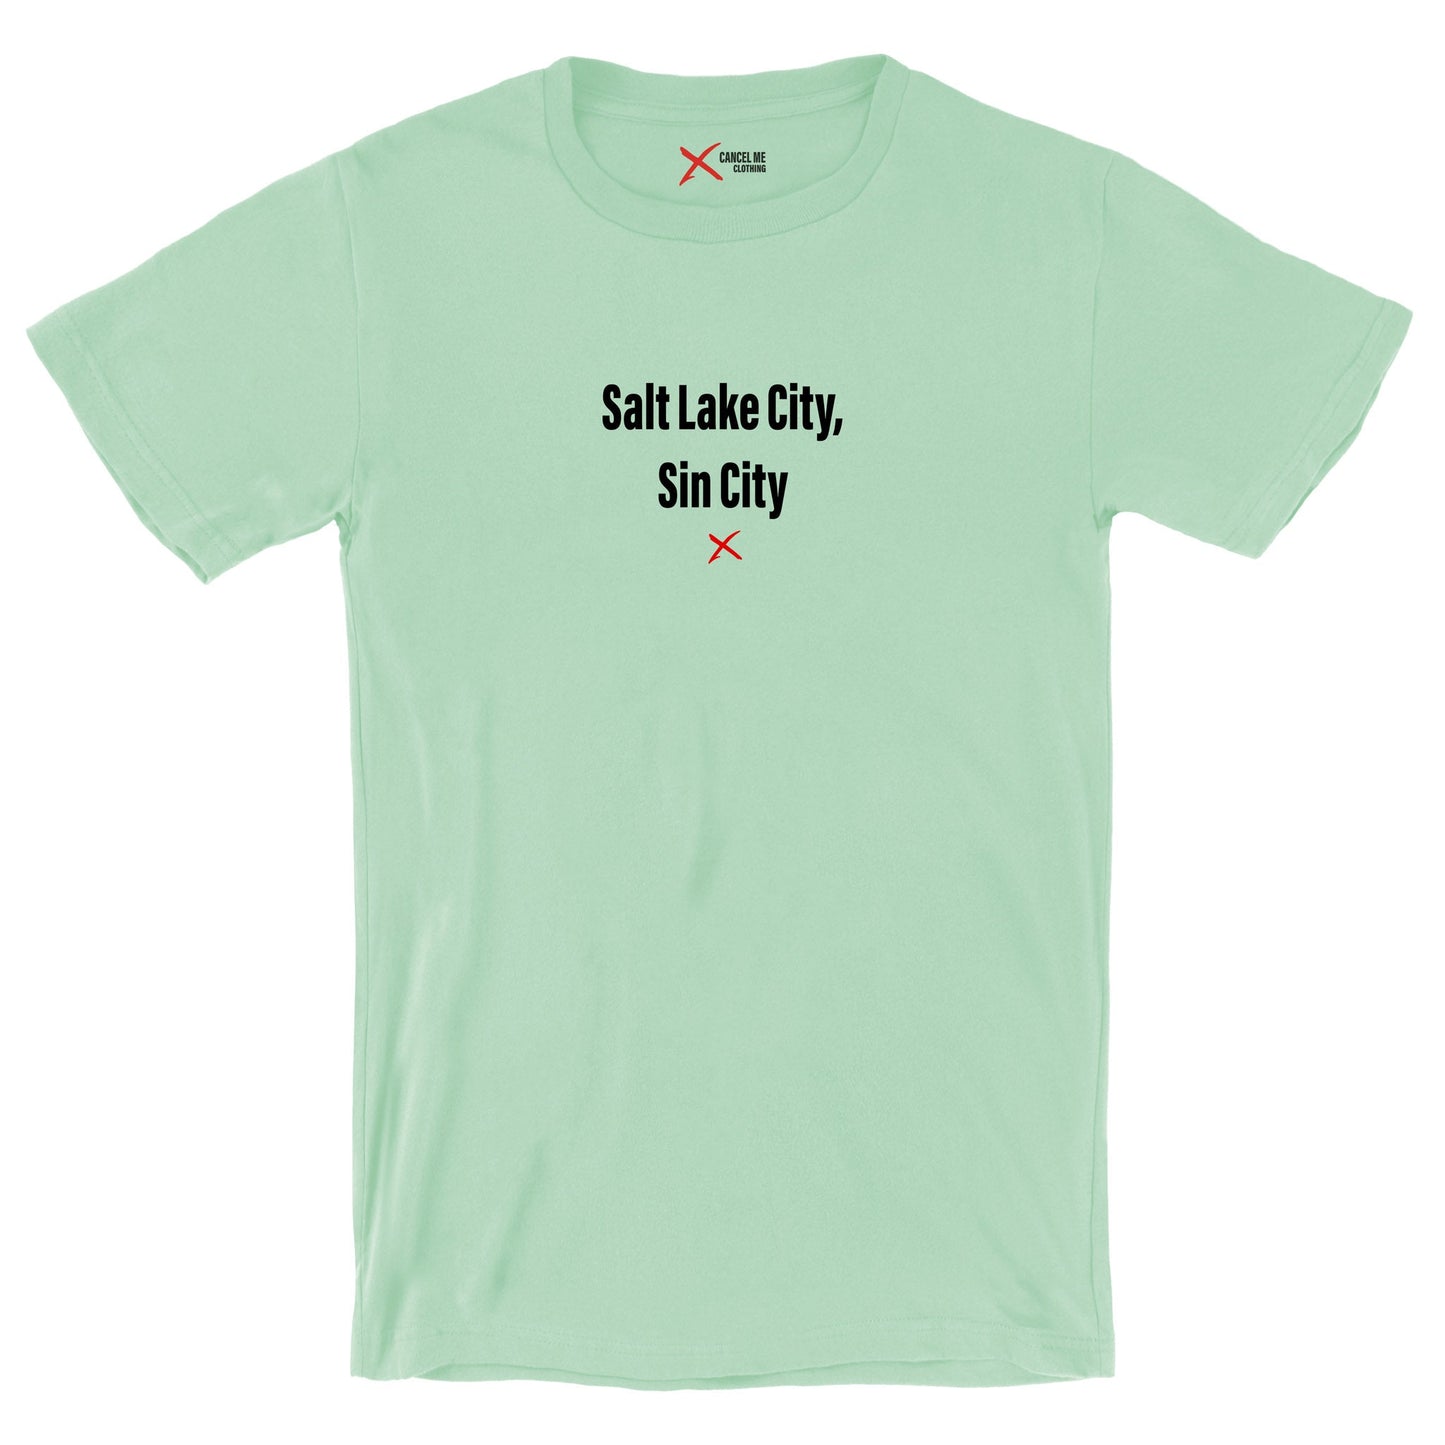 Salt Lake City, Sin City - Shirt